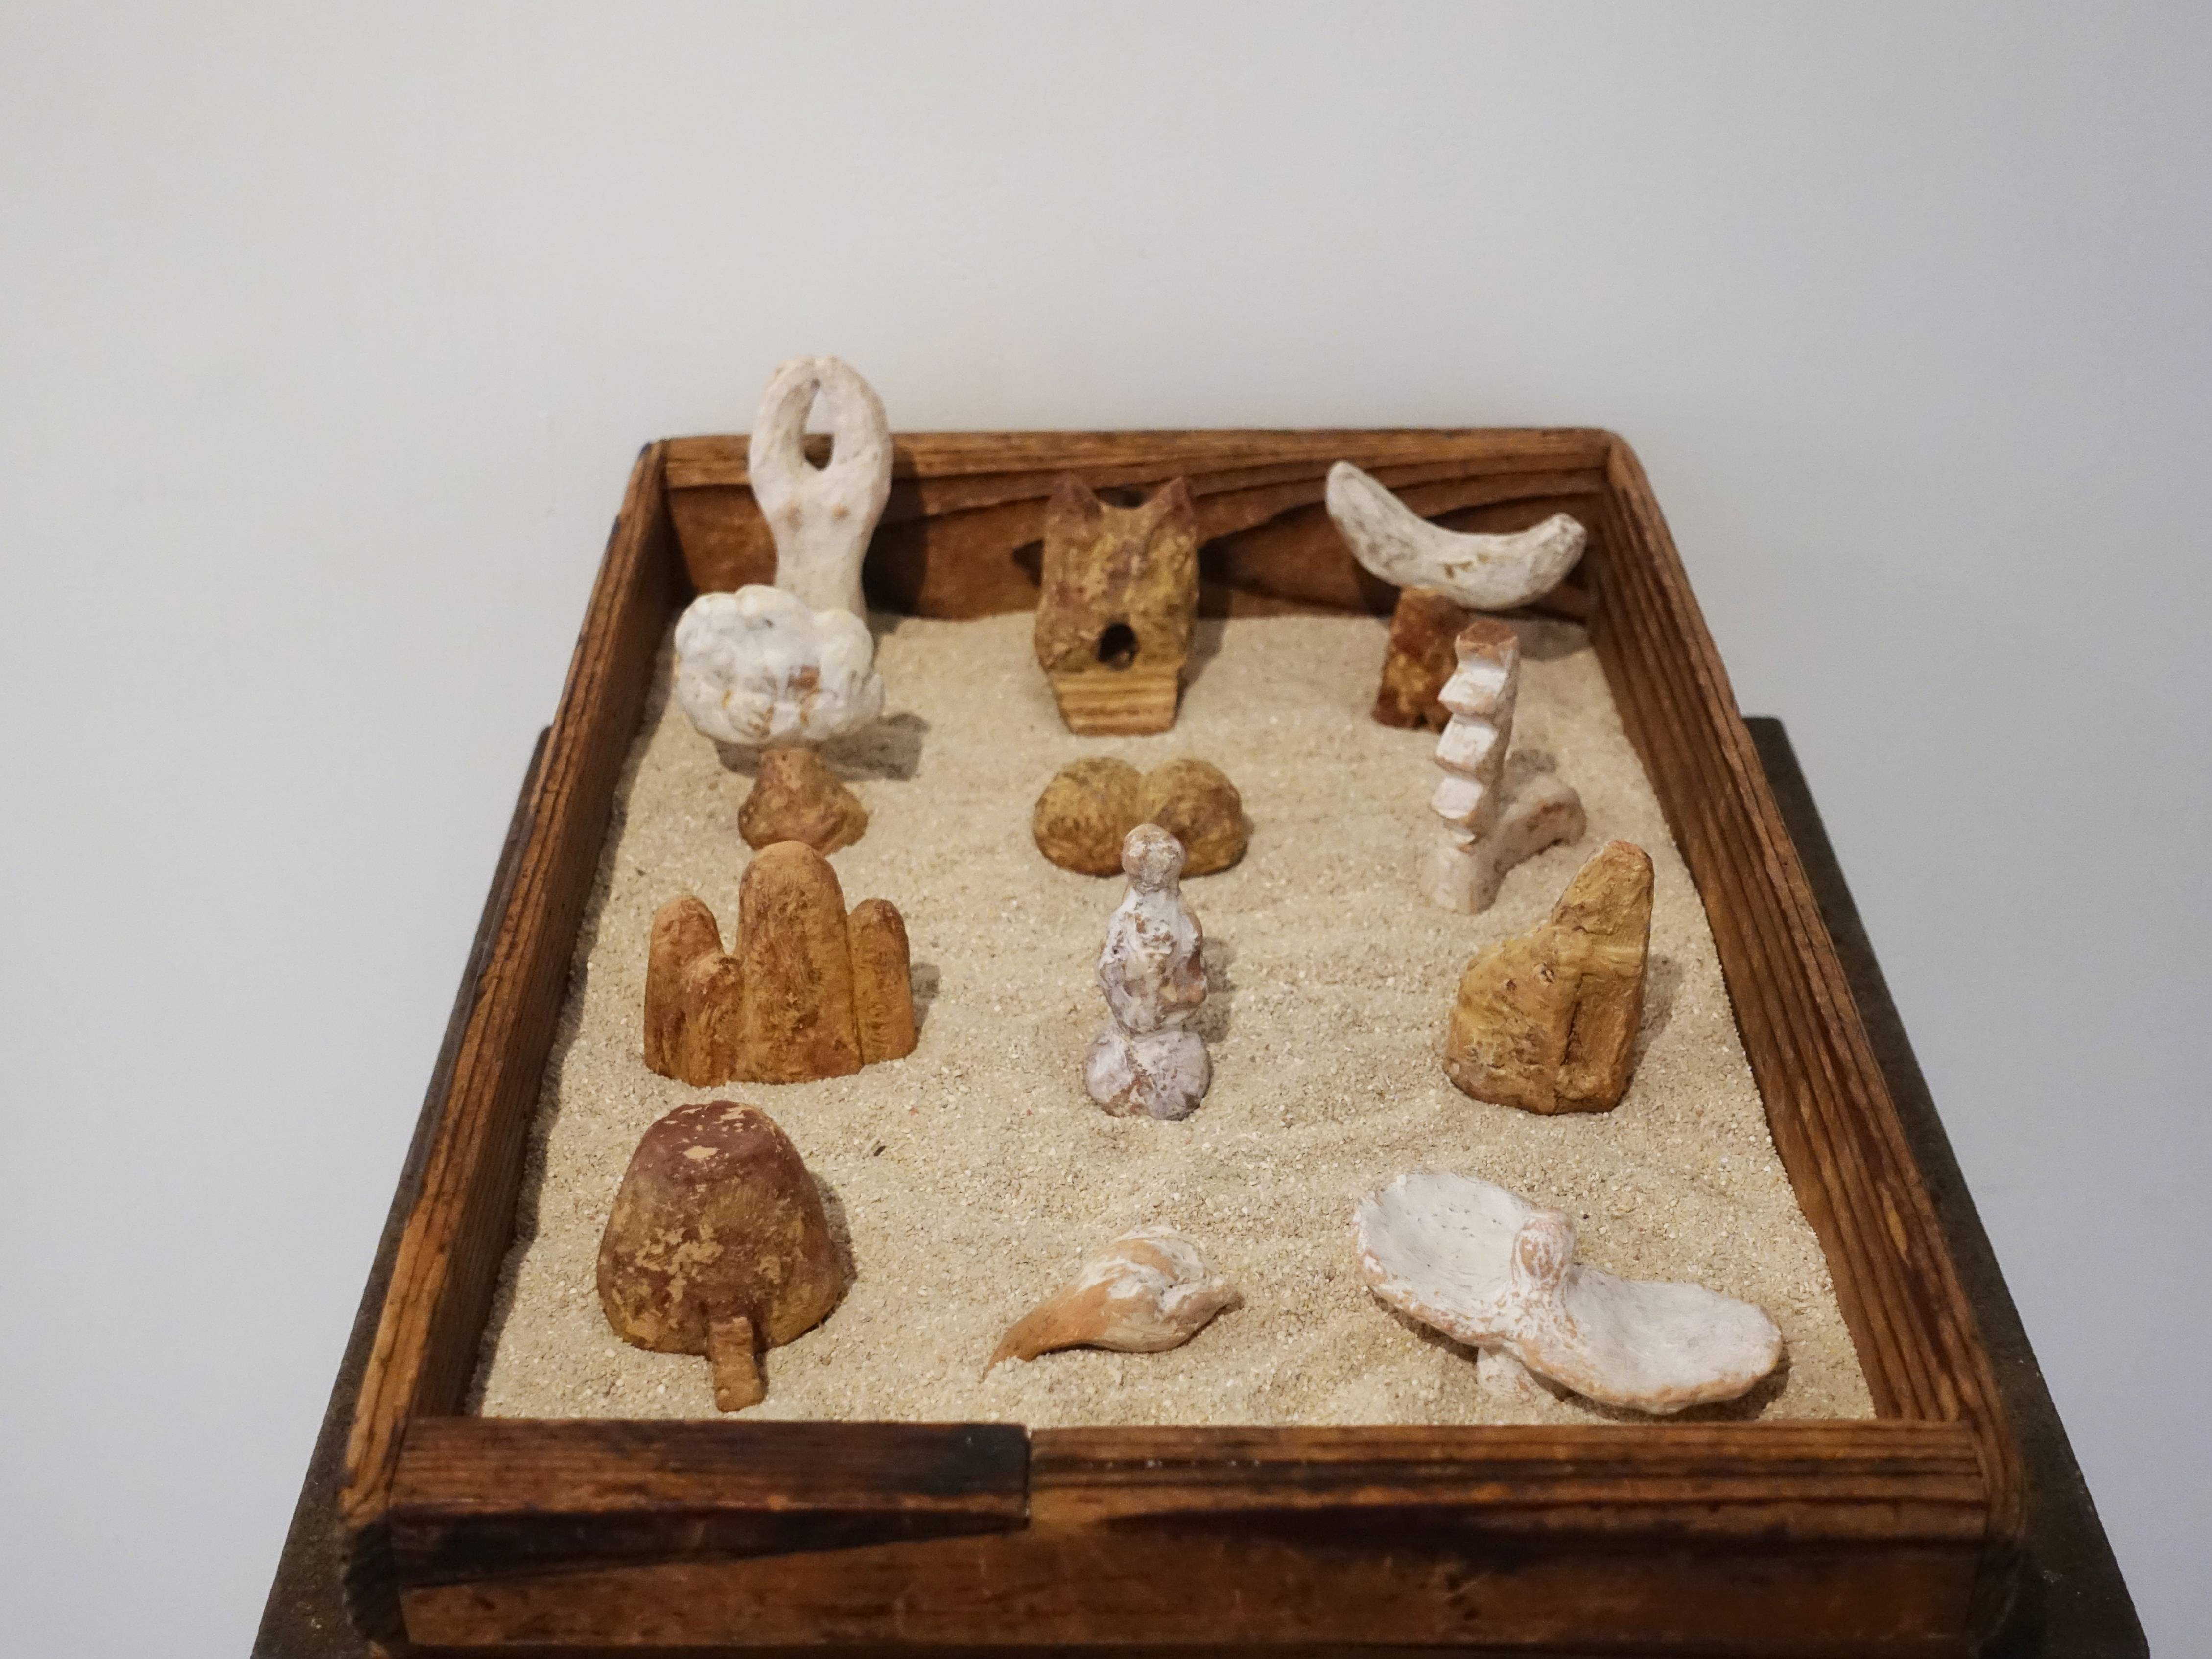 林怡芬，《天地一粒沙》，41 x 27 x 8 cm，Terra cotta、礦物質顏料、木材、沙，2019。